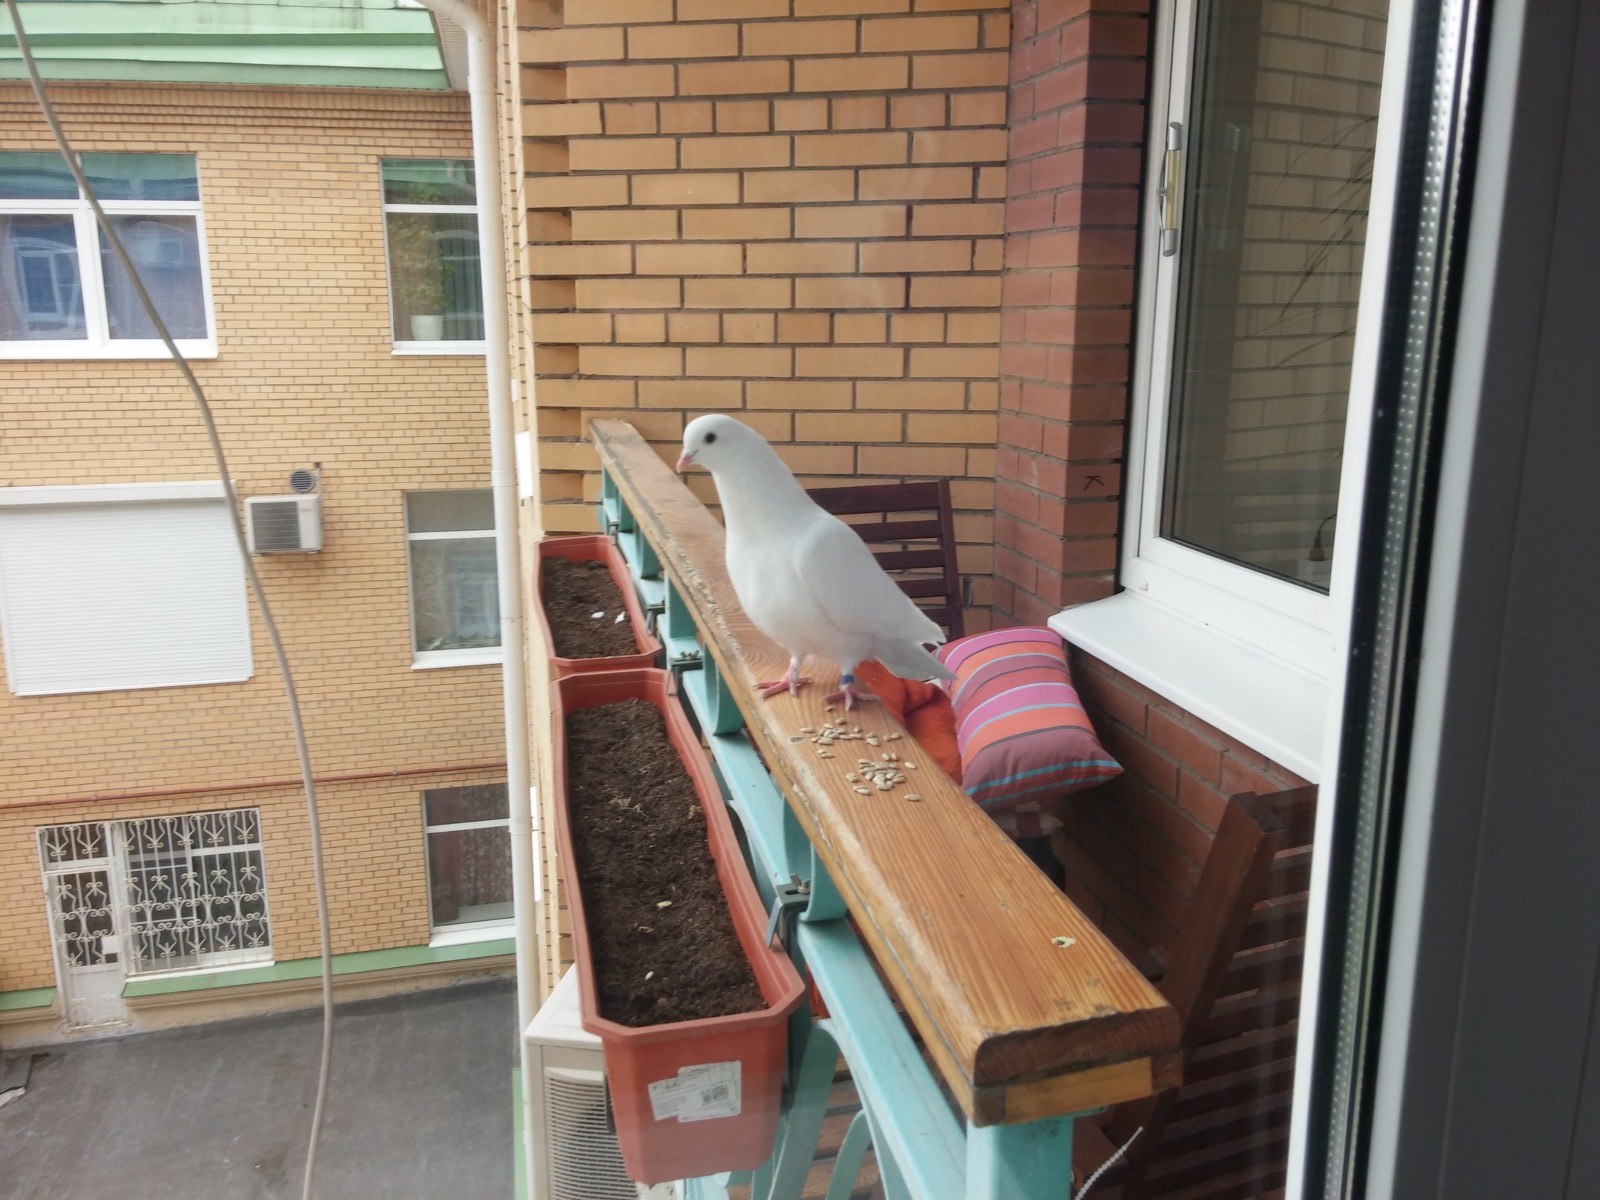 голубь сел на карниз окна и не улетает